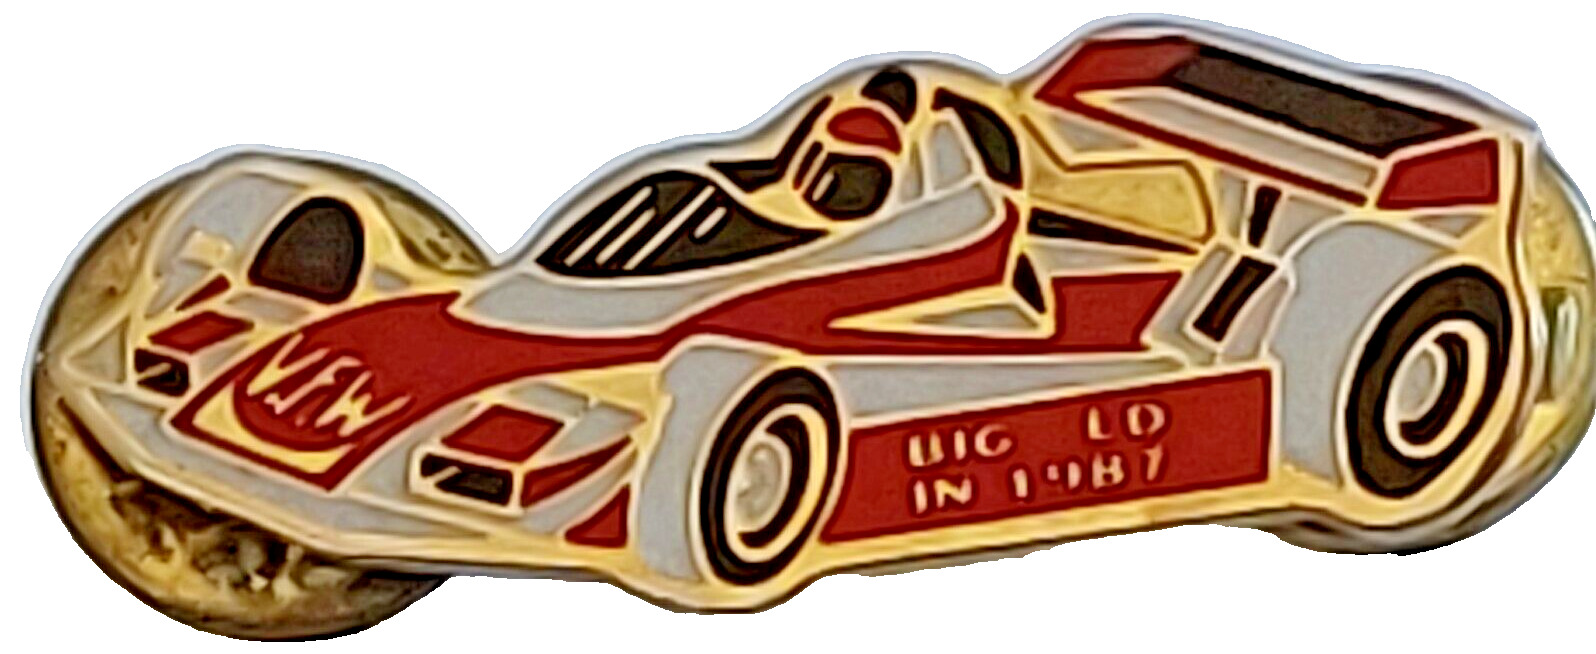 VFW Indiana Big Ed 1987 Racecar Lapel Pin